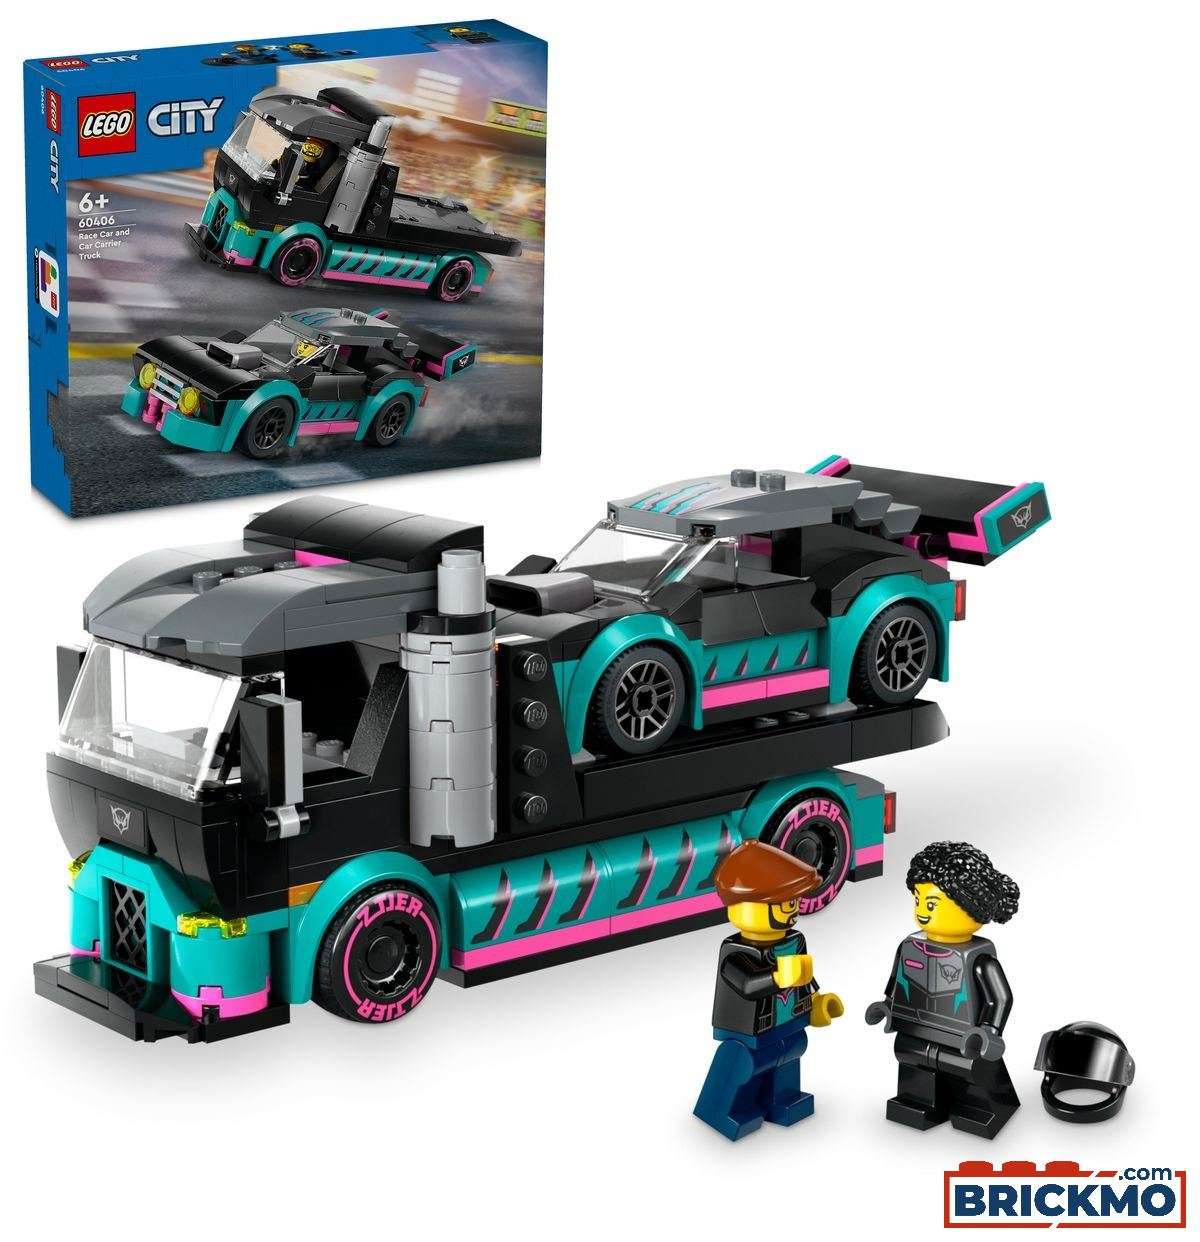 LEGO City 60406 Race Car and Car Carrier Truck 60406